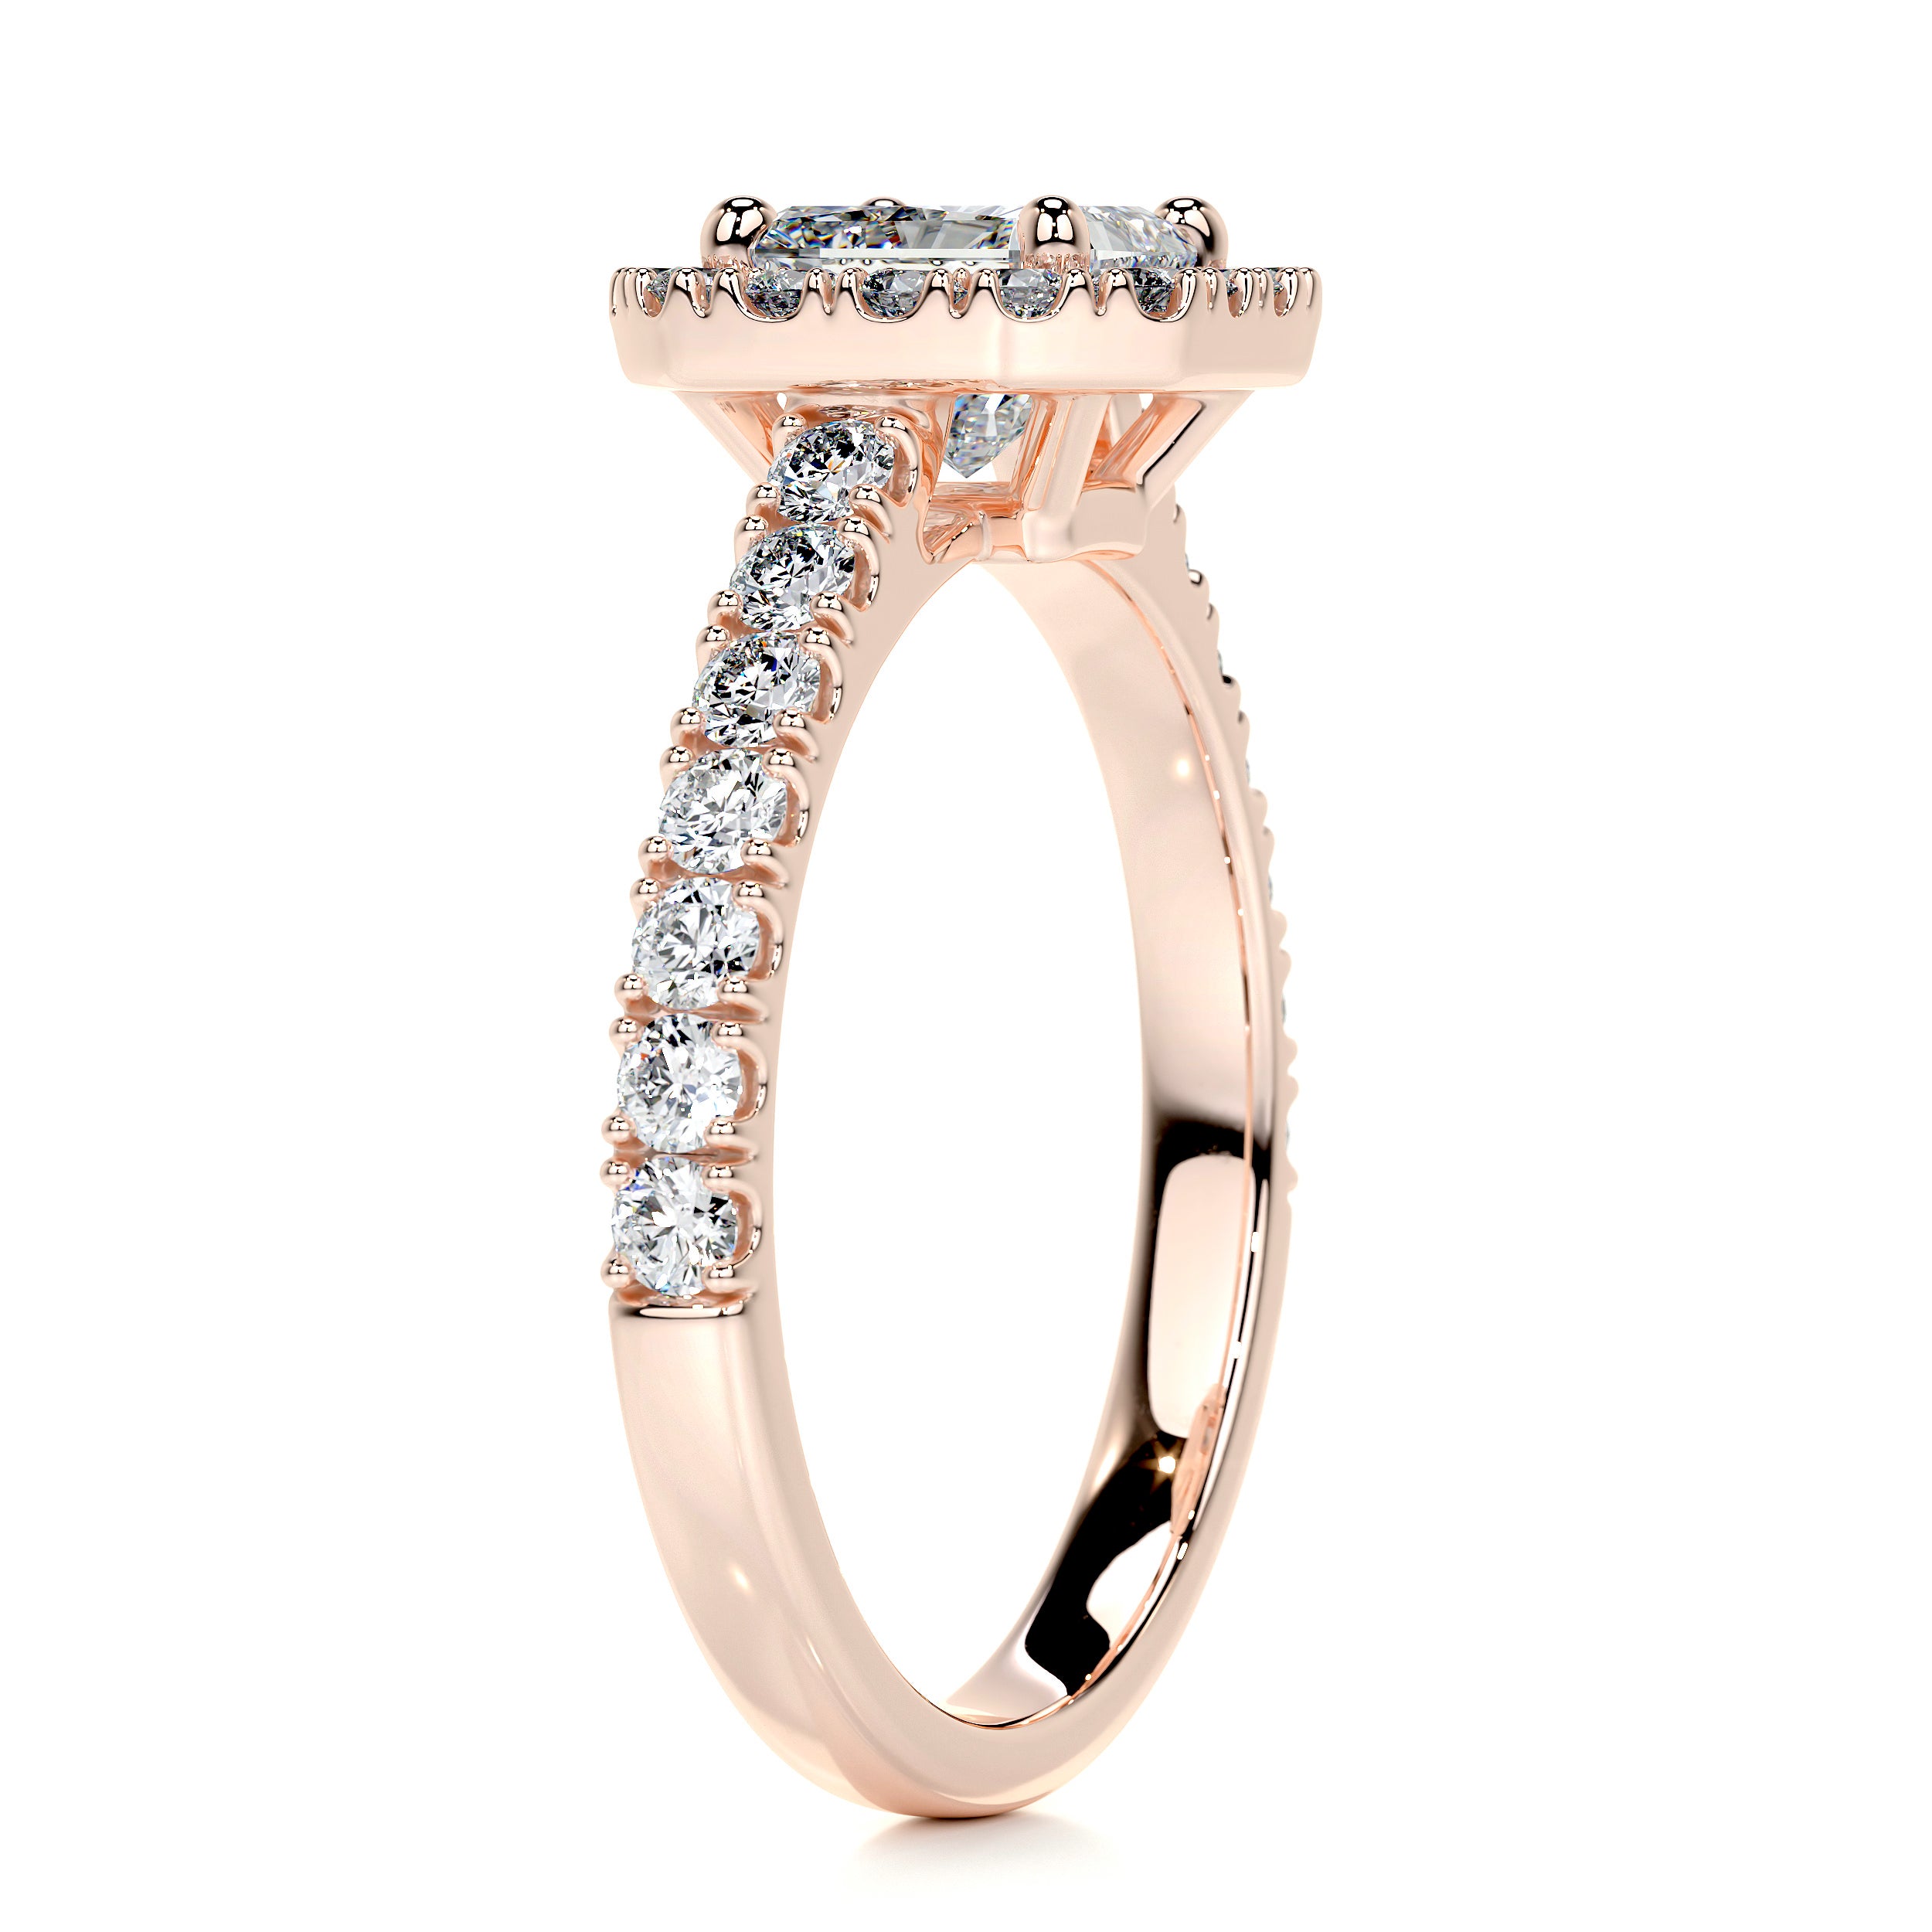 Cora Diamond Engagement Ring   (1.35 Carat) -14K Rose Gold